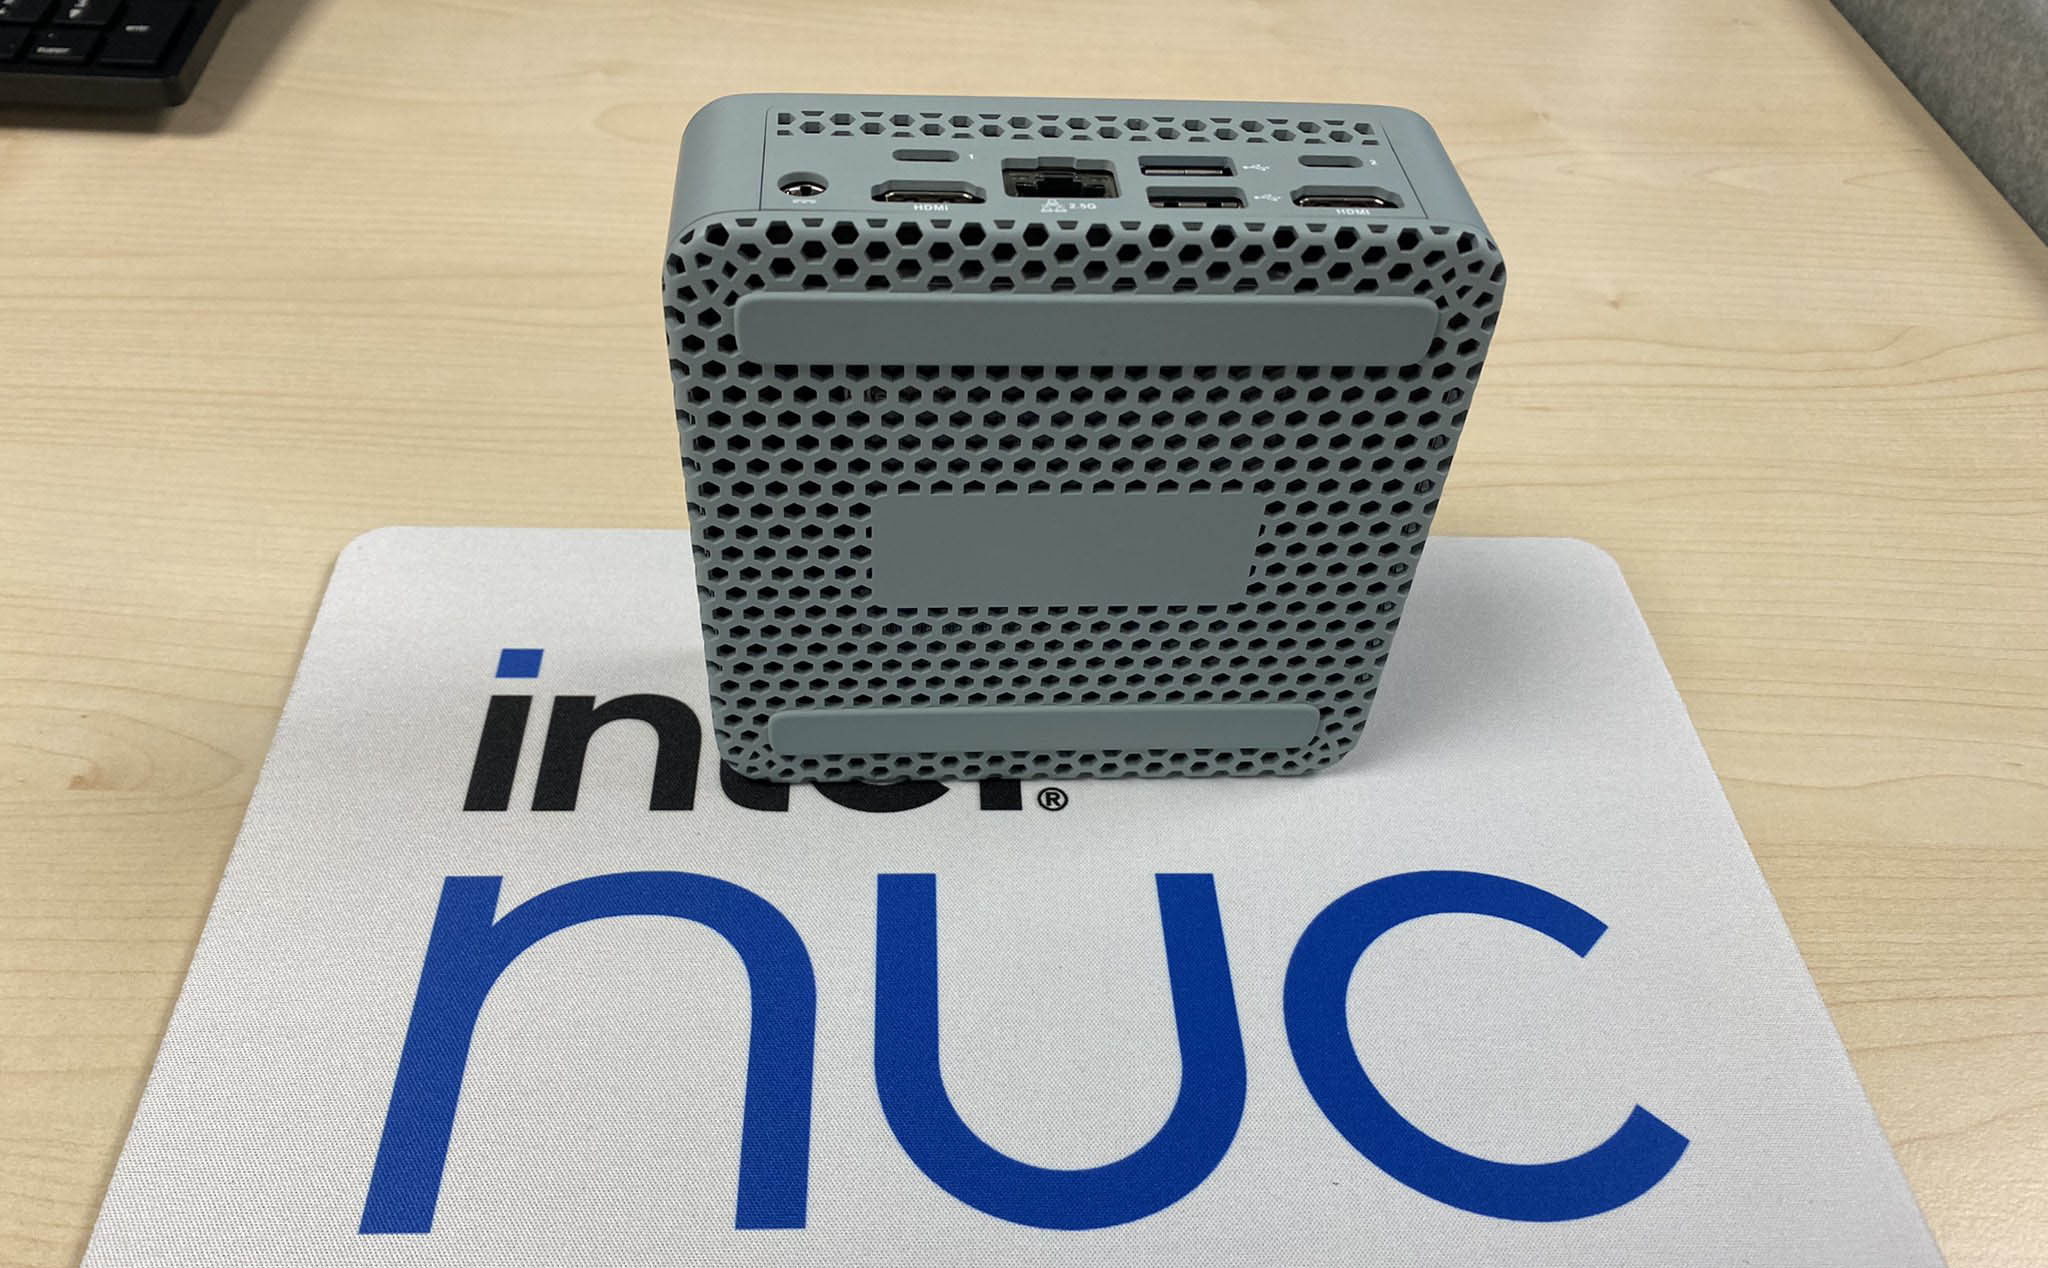 Intel NUC 13 Pro